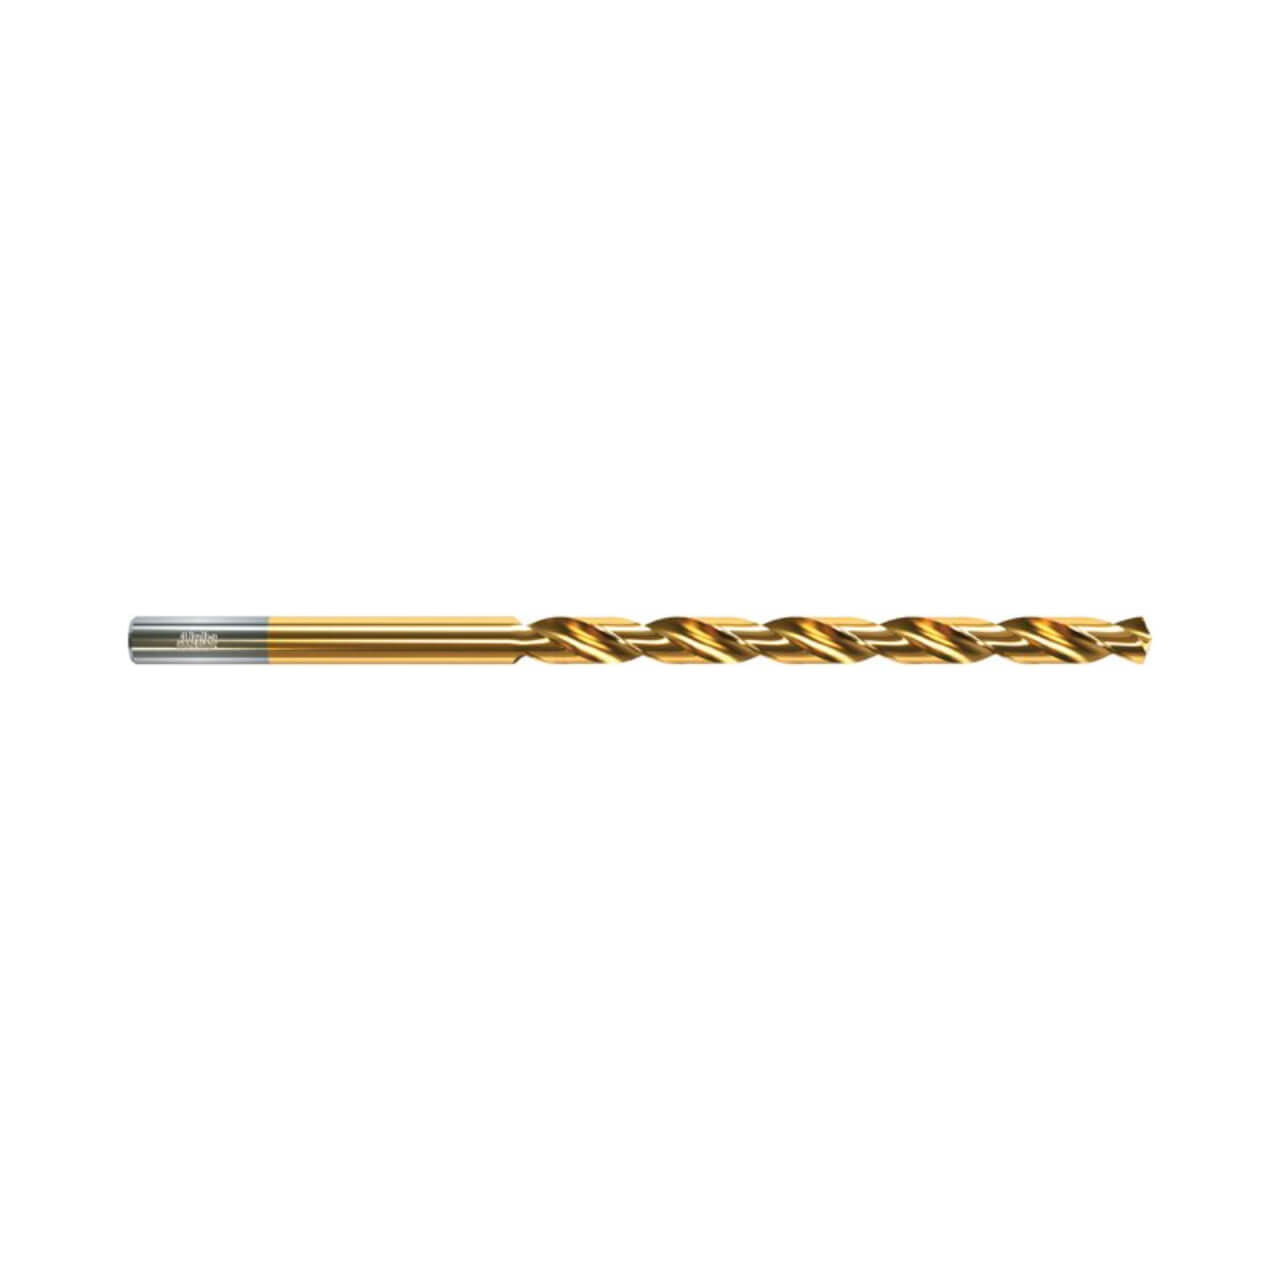 Alpha 7.5mm Long Series Drill Bit Gold Series (OAL 162mm)